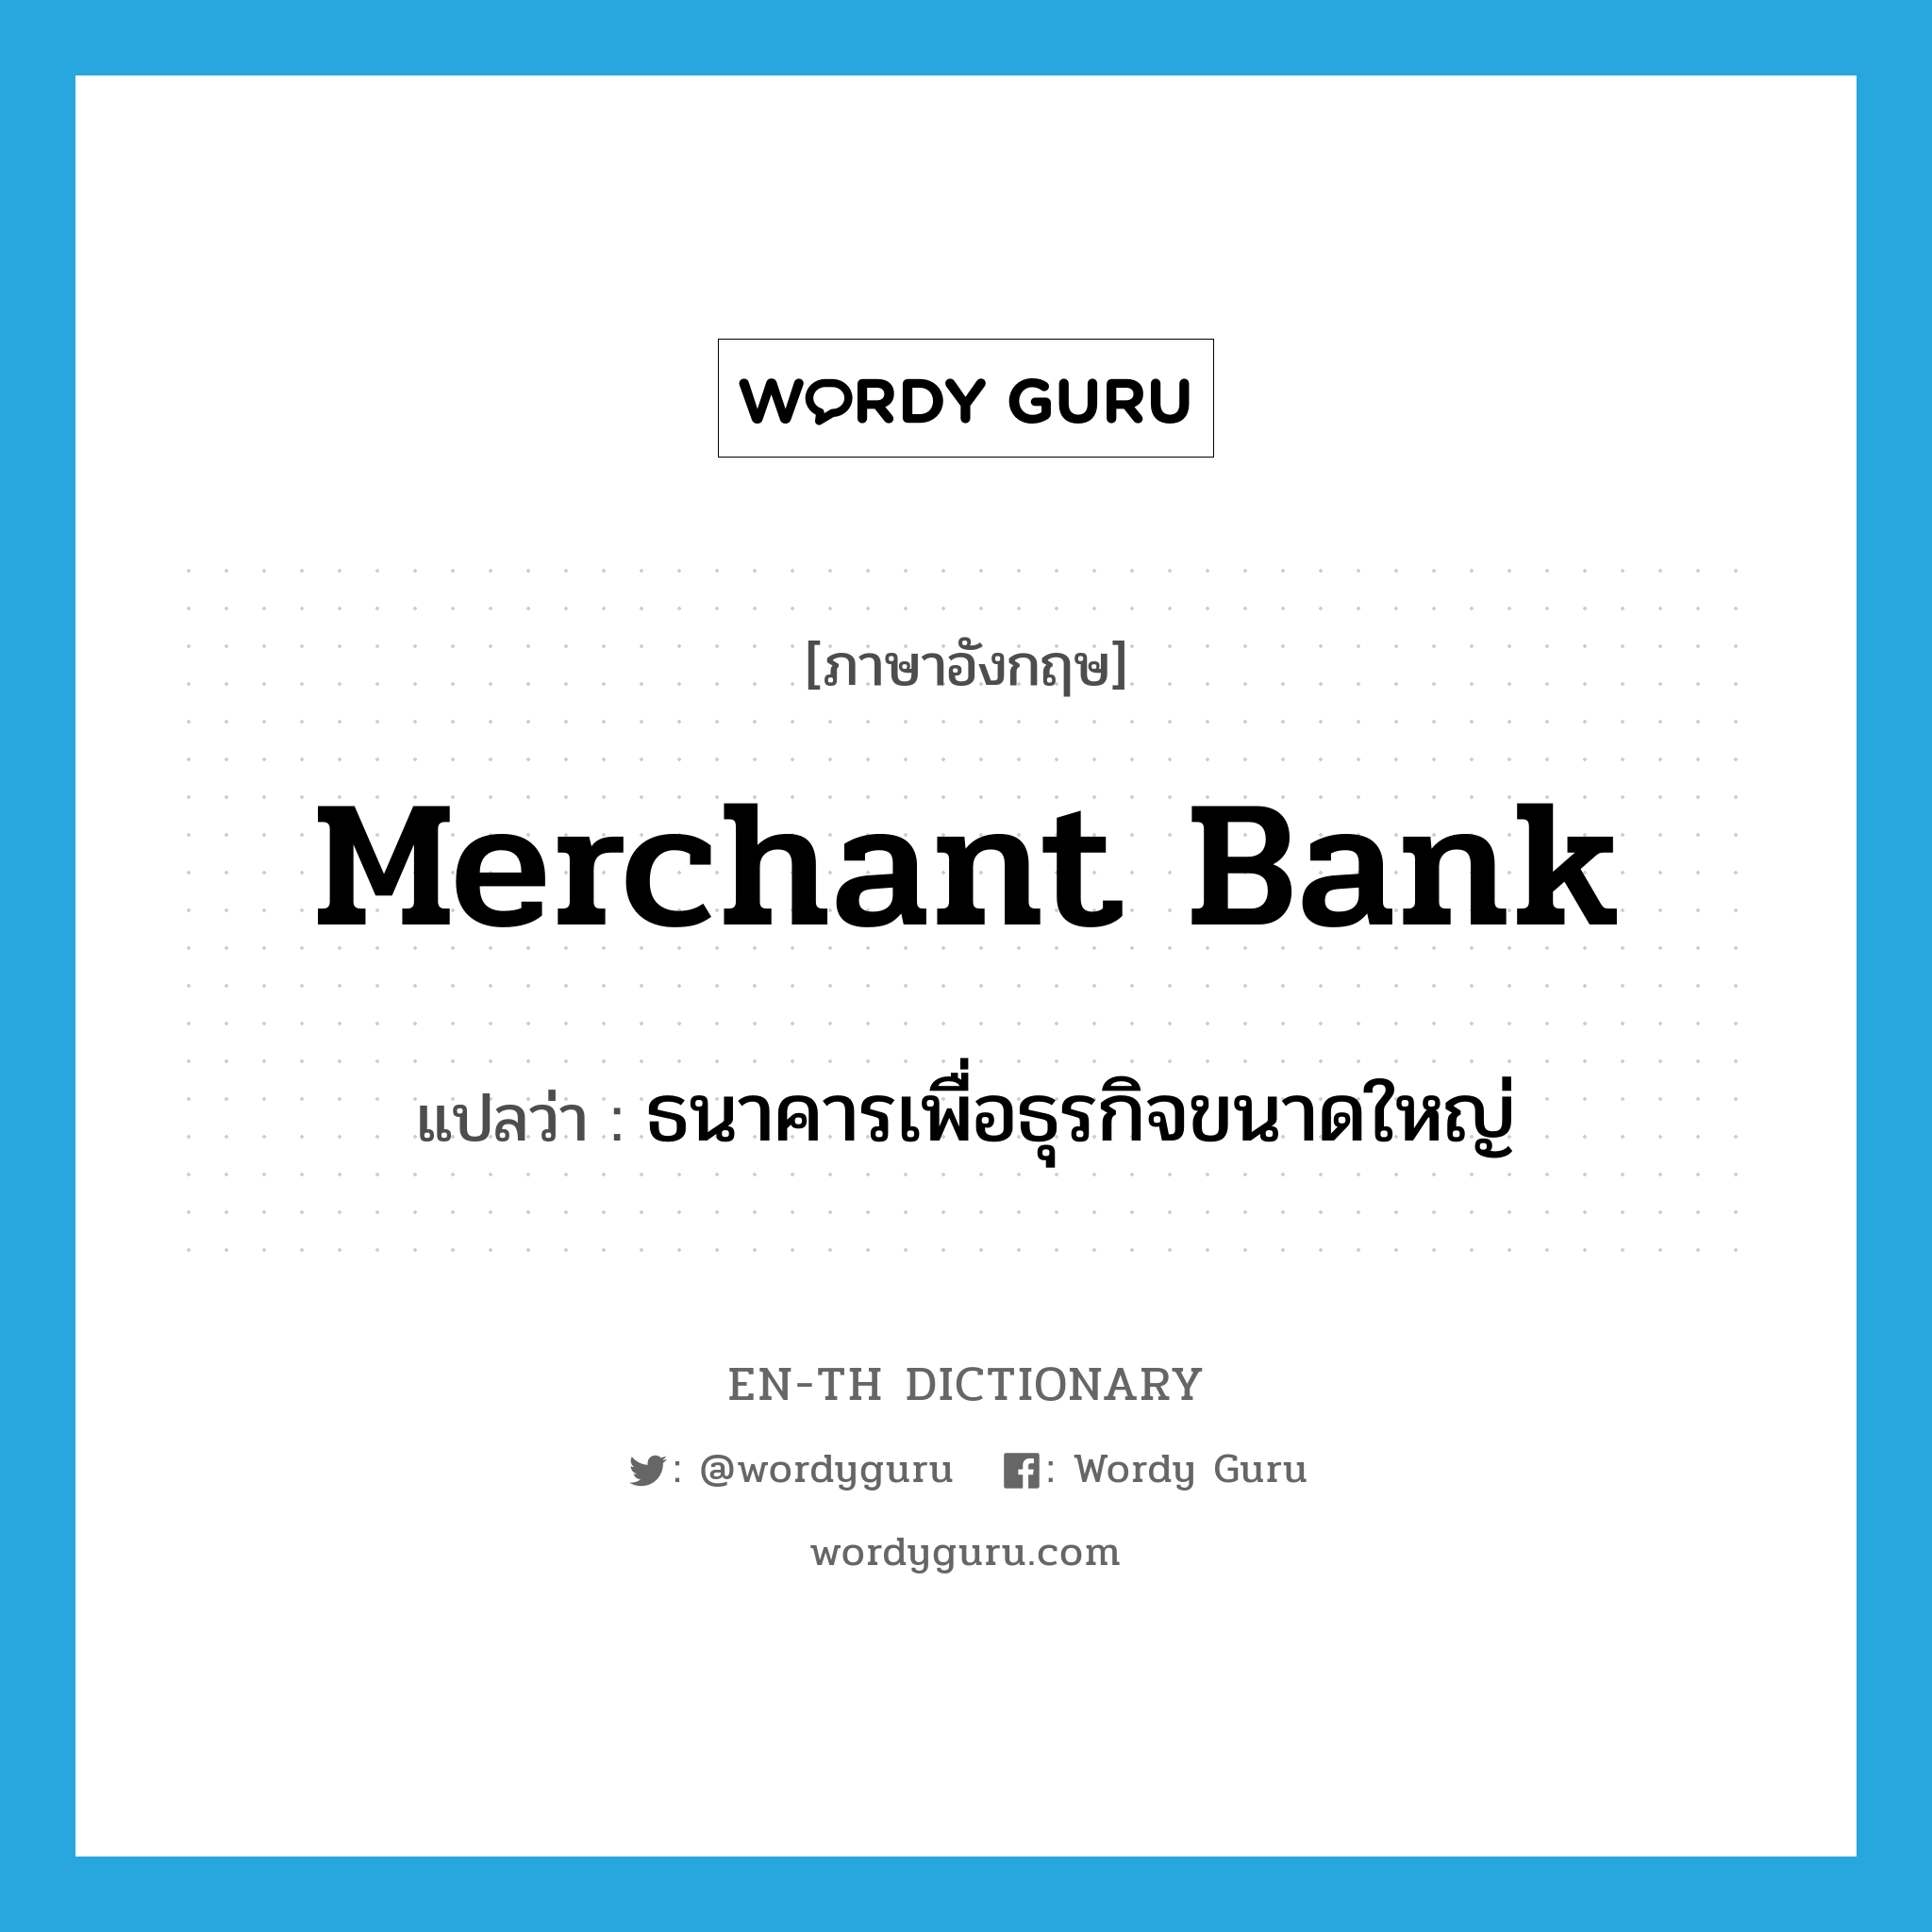 ธนาคารเพื่อธุรกิจขนาดใหญ่ ภาษาอังกฤษ?, คำศัพท์ภาษาอังกฤษ ธนาคารเพื่อธุรกิจขนาดใหญ่ แปลว่า merchant bank ประเภท N หมวด N